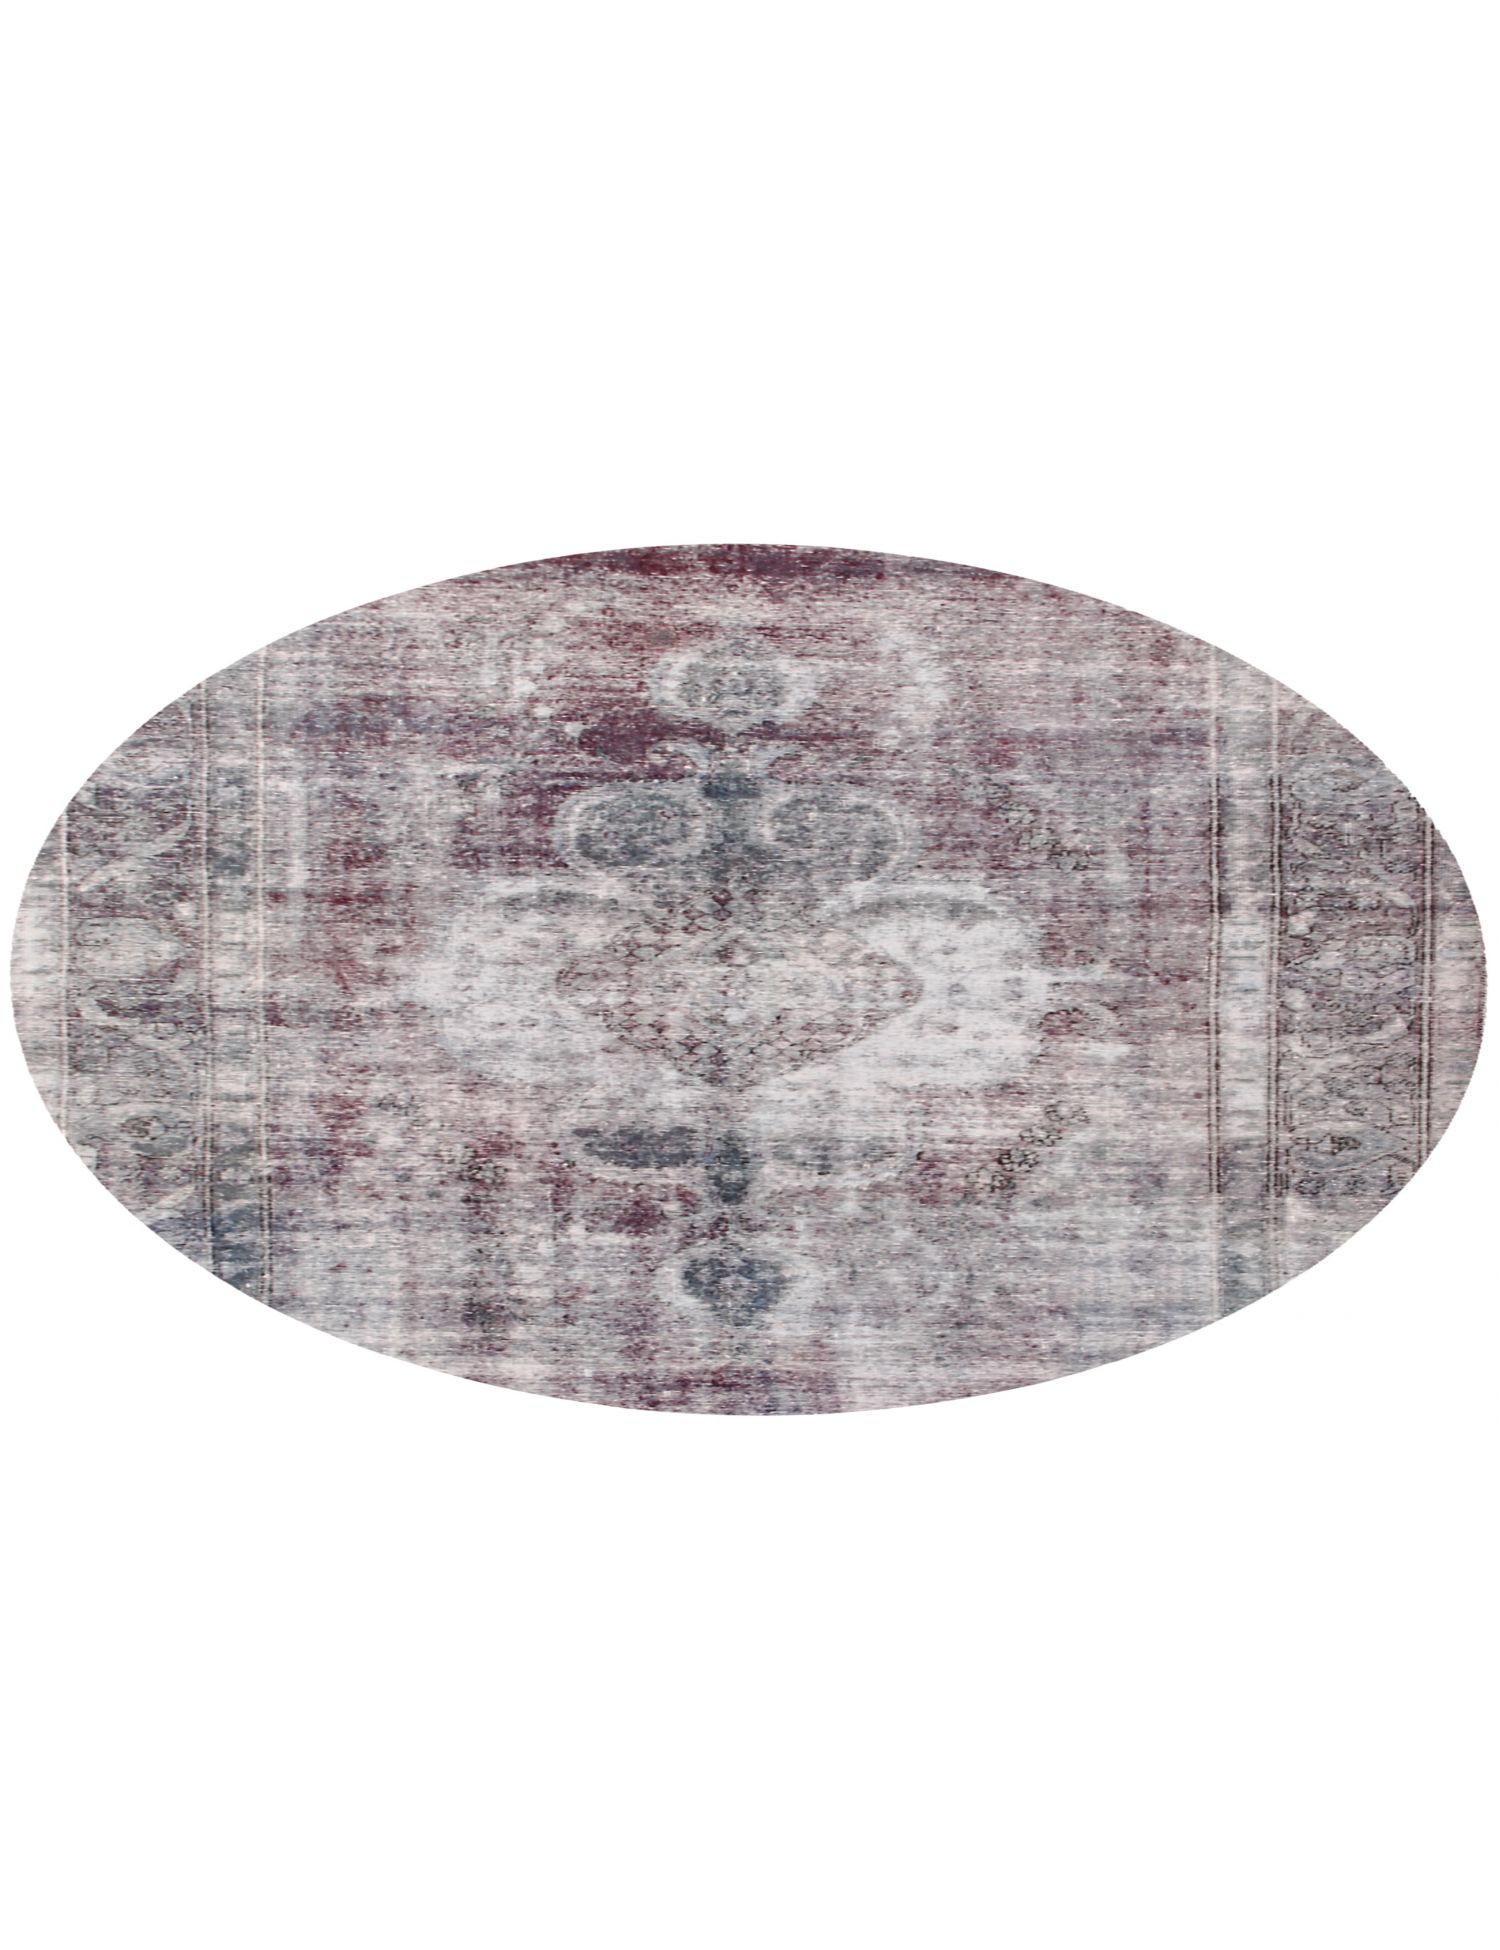 Rund  Vintage Teppich  lila <br/>215 x 215 cm